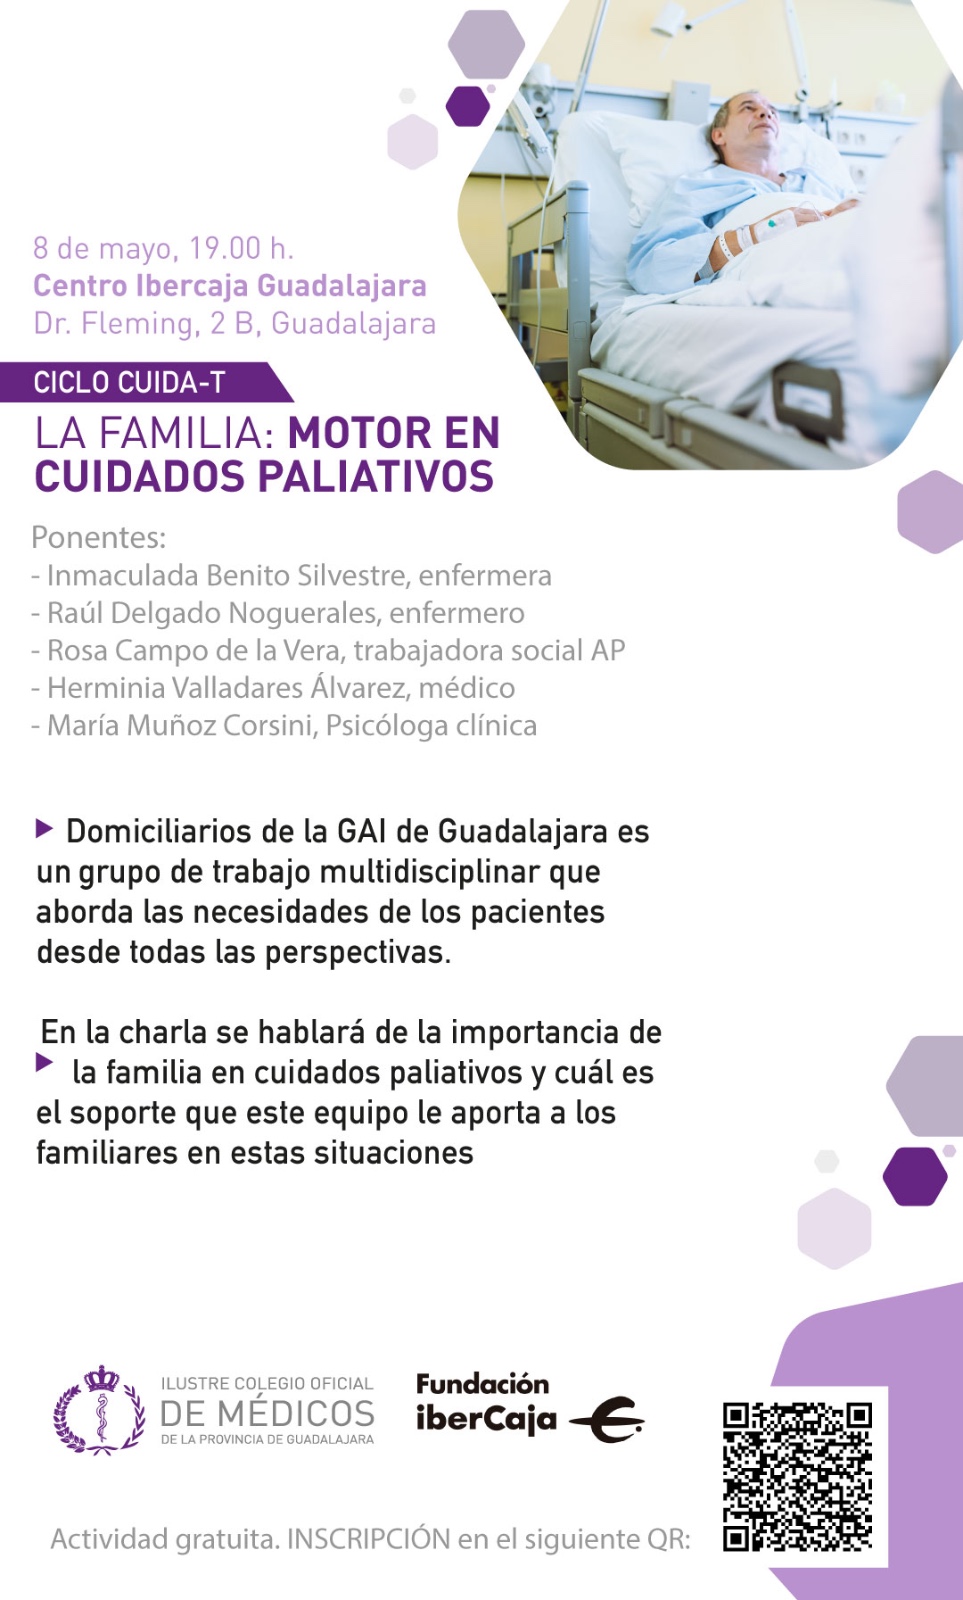 Descubre el Papel Vital de la Familia en los Cuidados Paliativos: Evento Gratuito en Guadalajara el 8 de Mayo